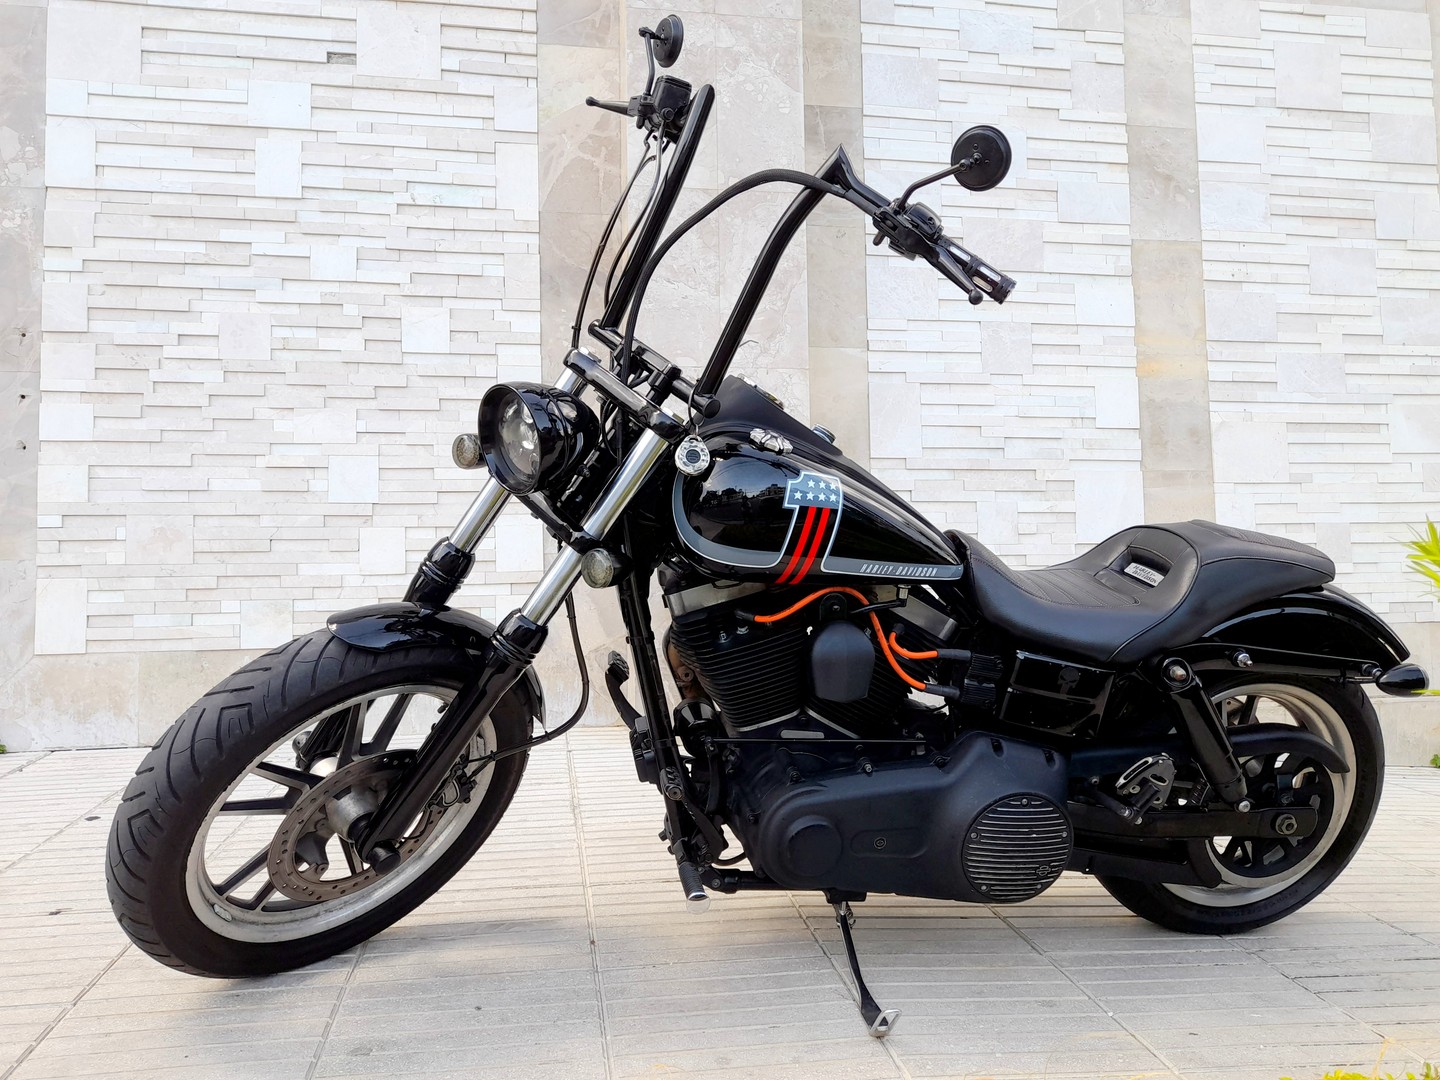 motores y pasolas - Harley Davidson Street Bob 2013 como nueva 1